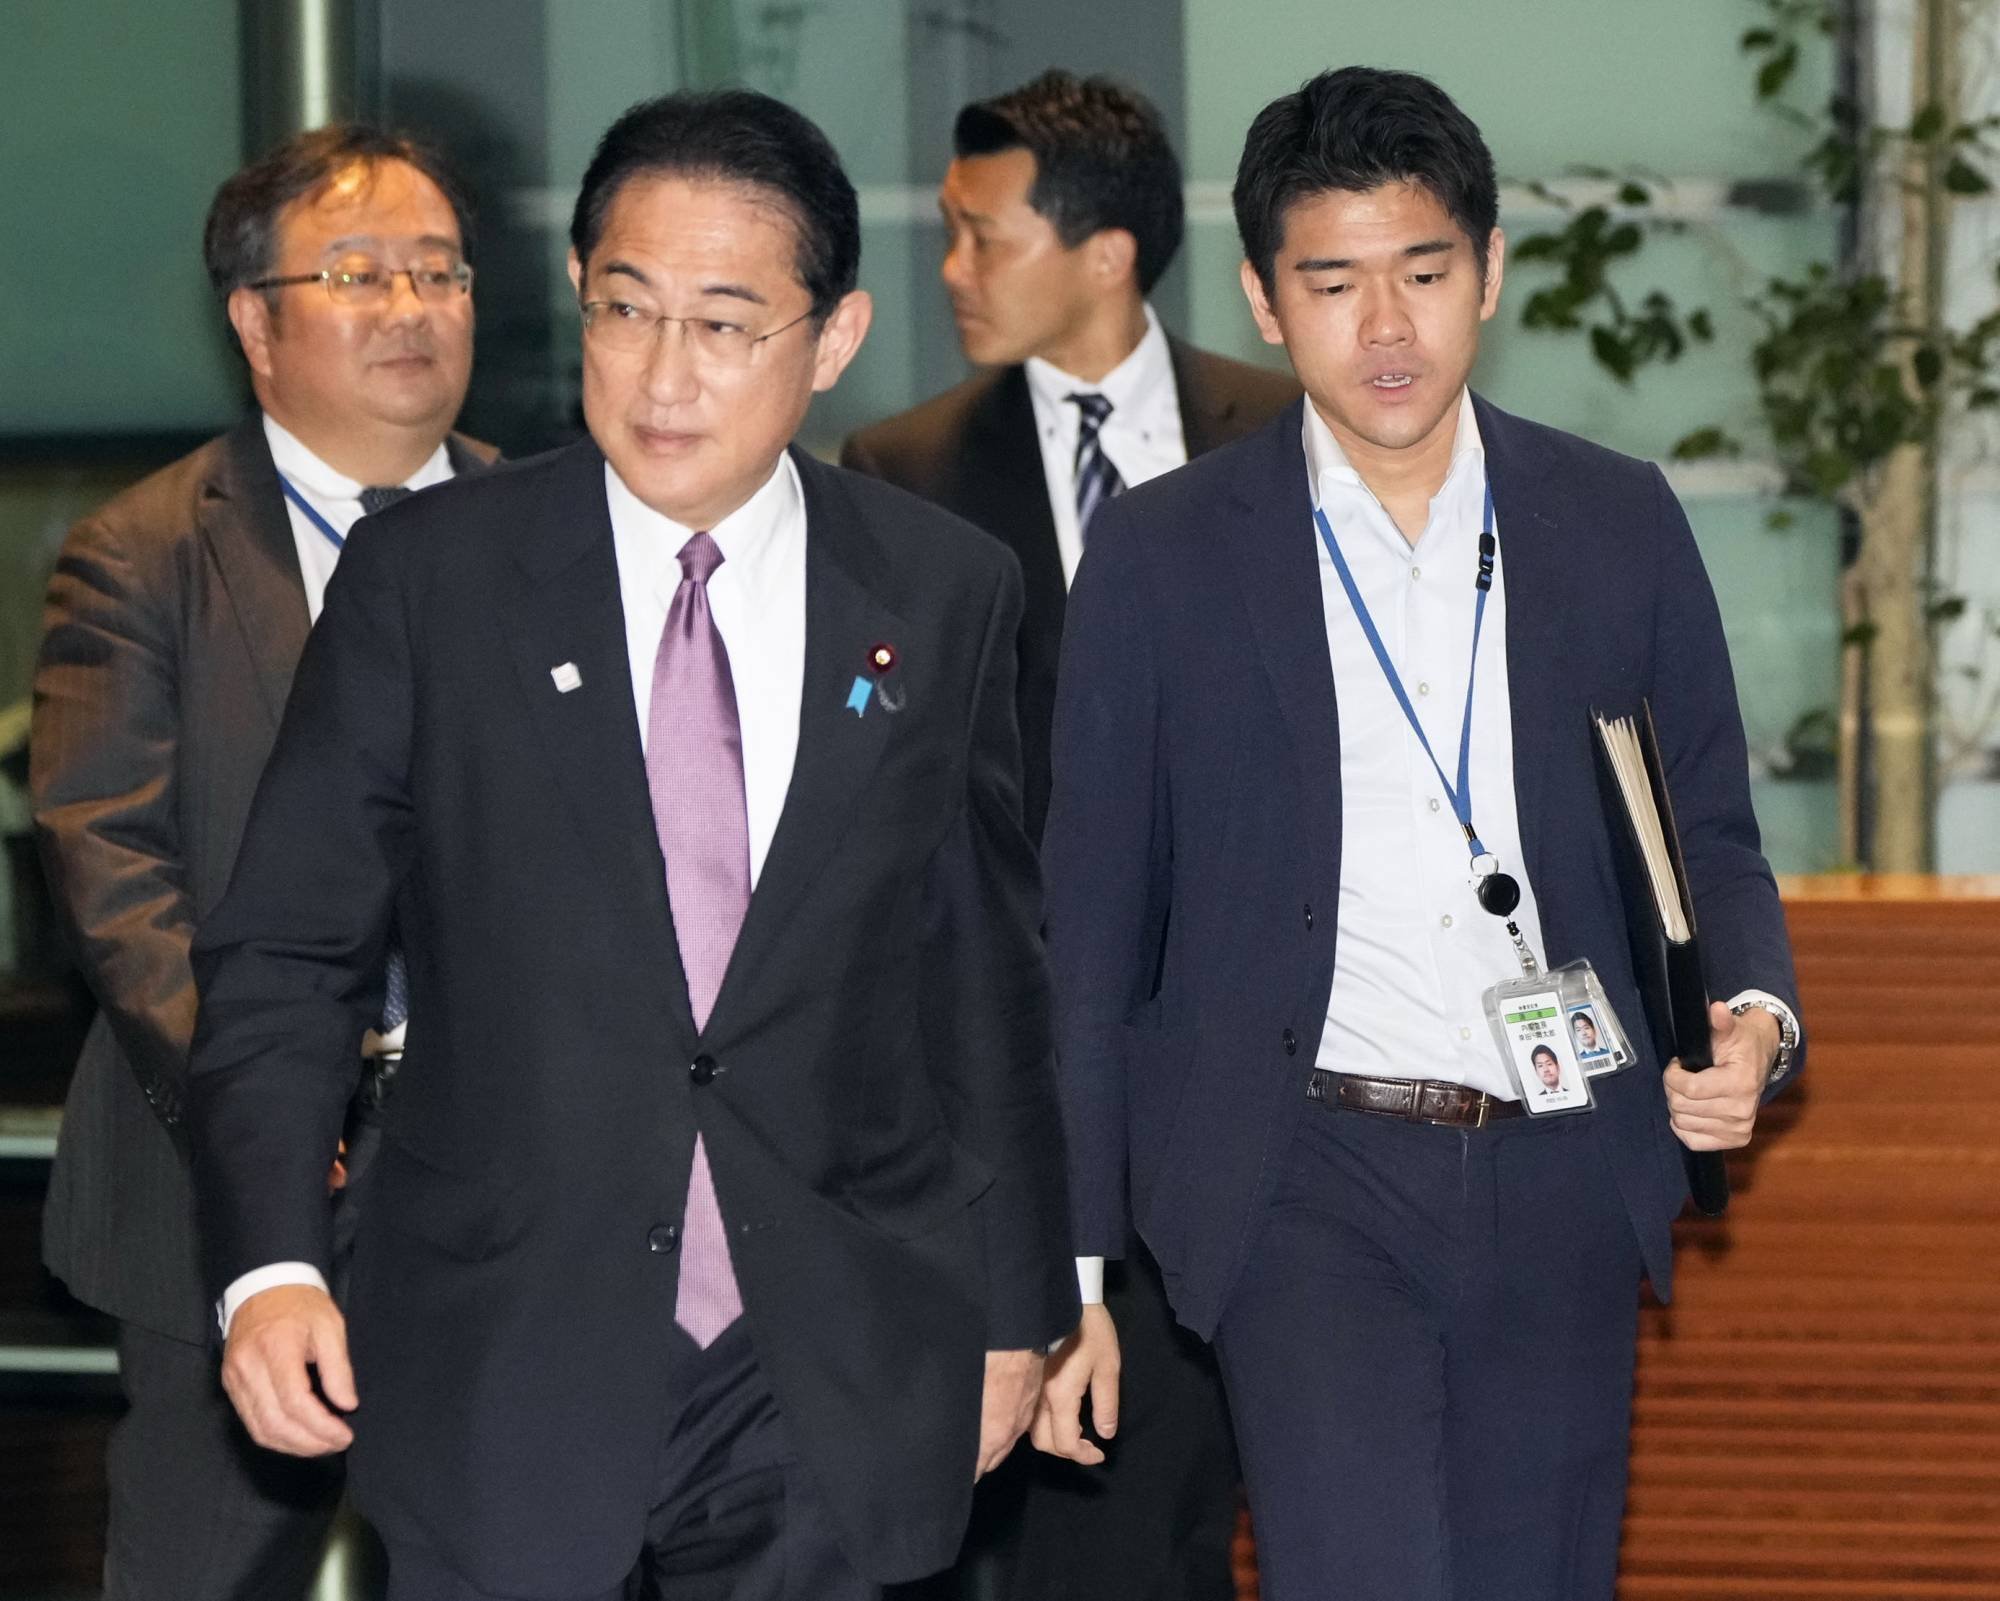  Premierul Japoniei şi-a concediat propriul fiu din postul de secretar din cauza unei petreceri scandaloasă